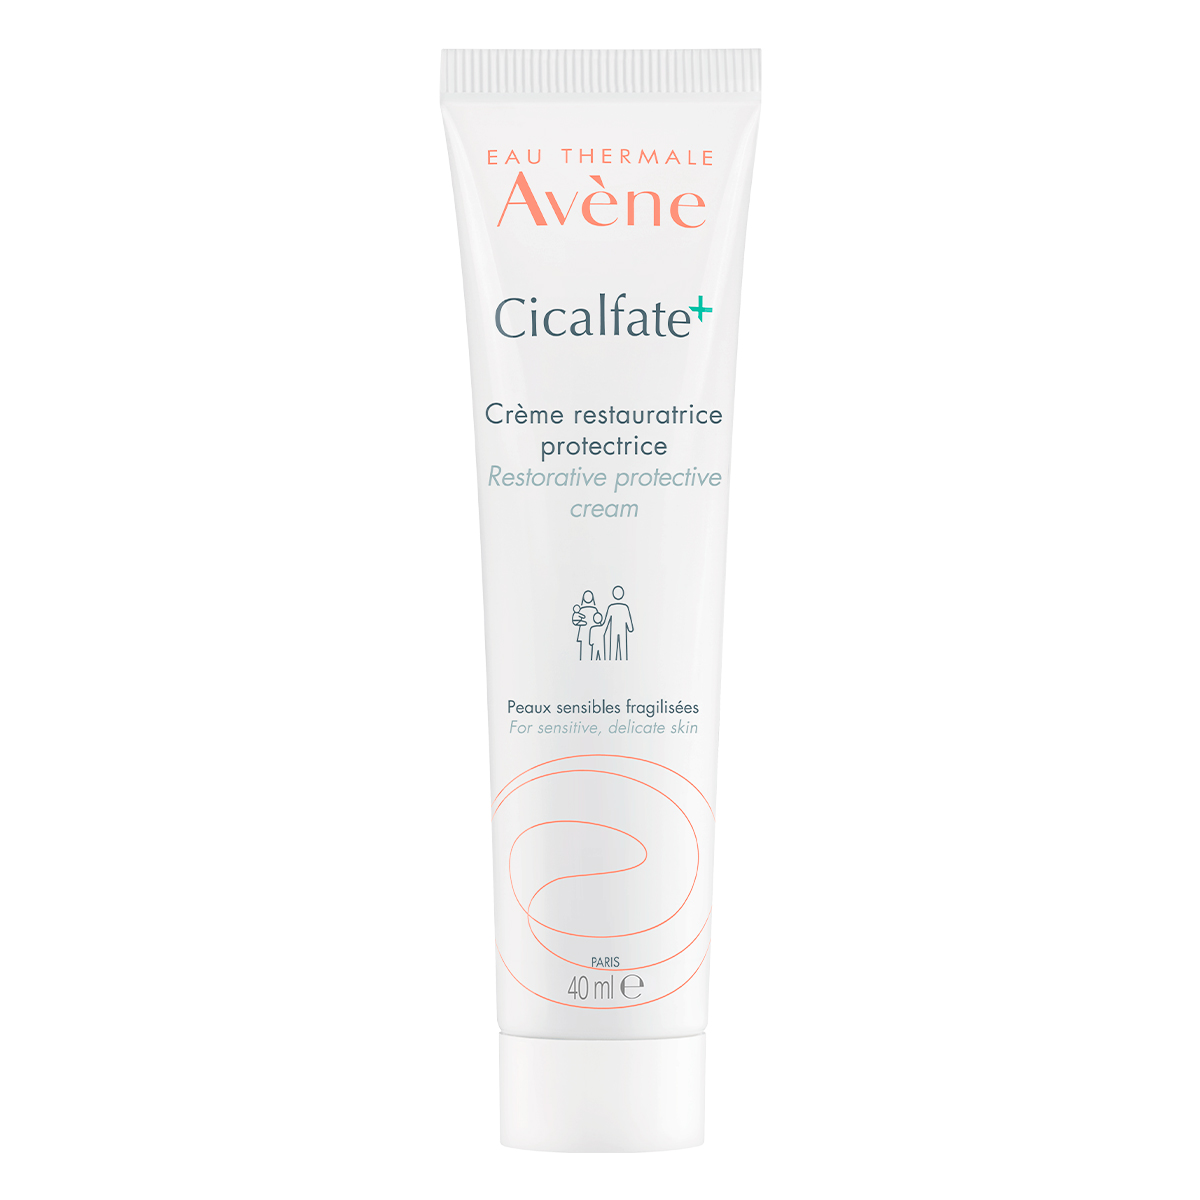 avene cicalfate крем восстанавливающий целостность кожи 40 мл Avene Восстанавливающий защитный крем, 40 мл (Avene, Cicalfate)